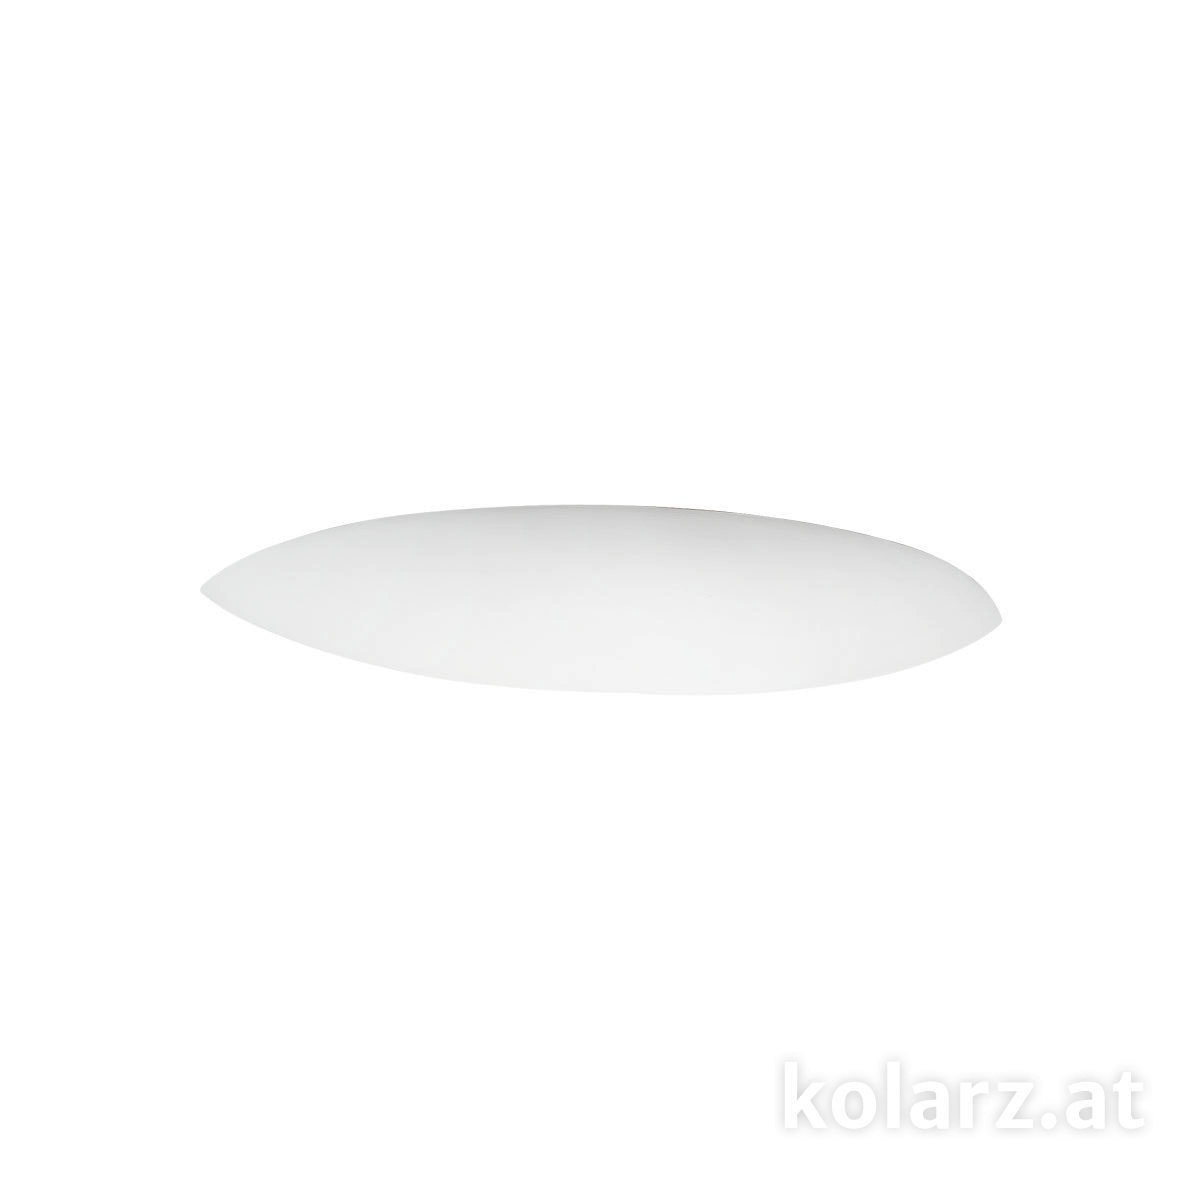 KOLARZ Leuchten Moderne Sonderangebote - Sale bei Wandlampen & Wandleuchten fürs Esszimmer von KOLARZ Leuchten Elegance Wandleuchte 219.60.1